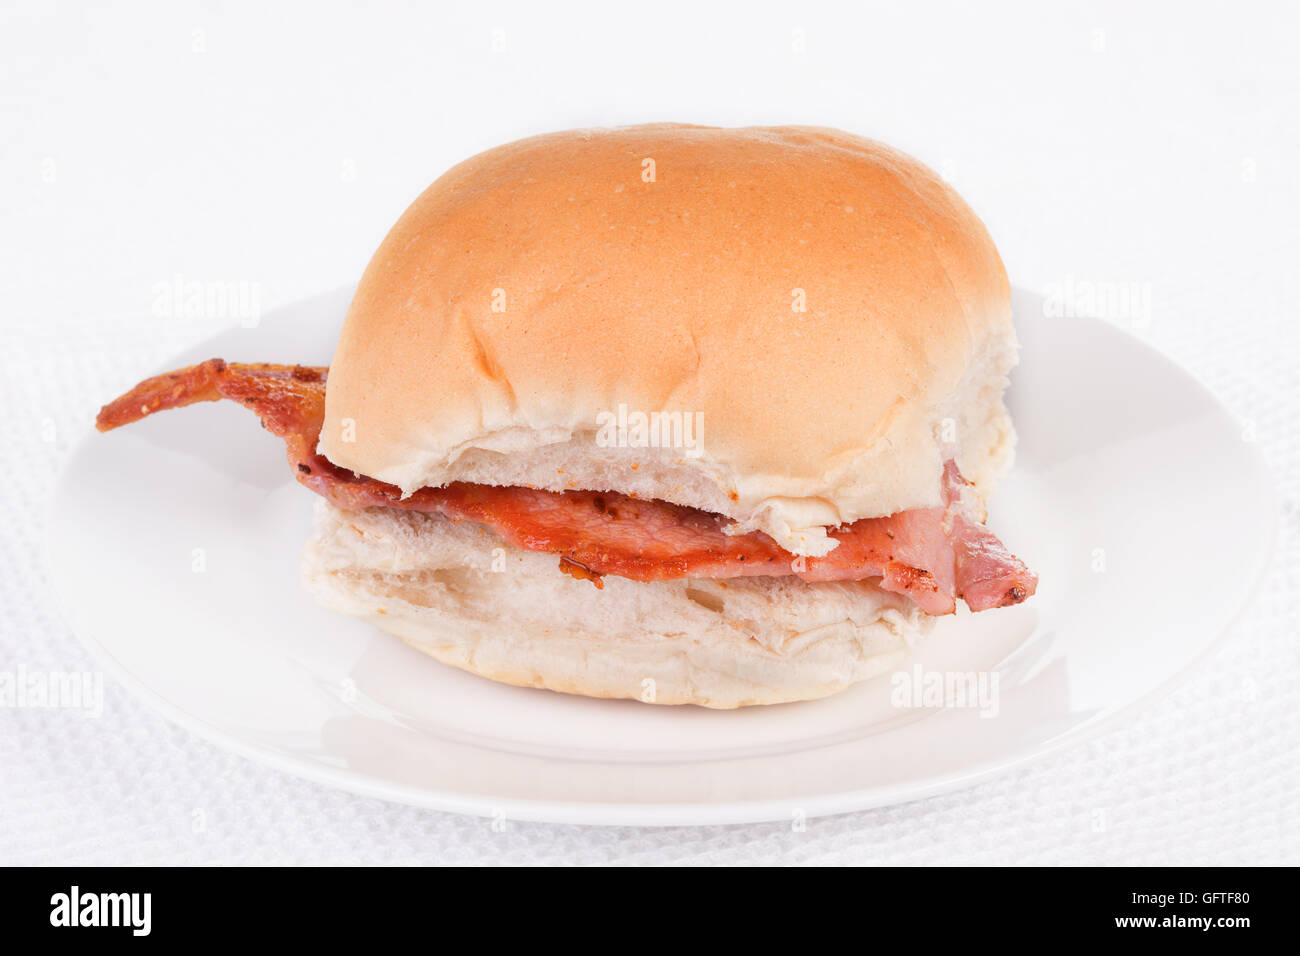 Bacon roll, bap or bun on a white plate. Selective focus Stock Photo